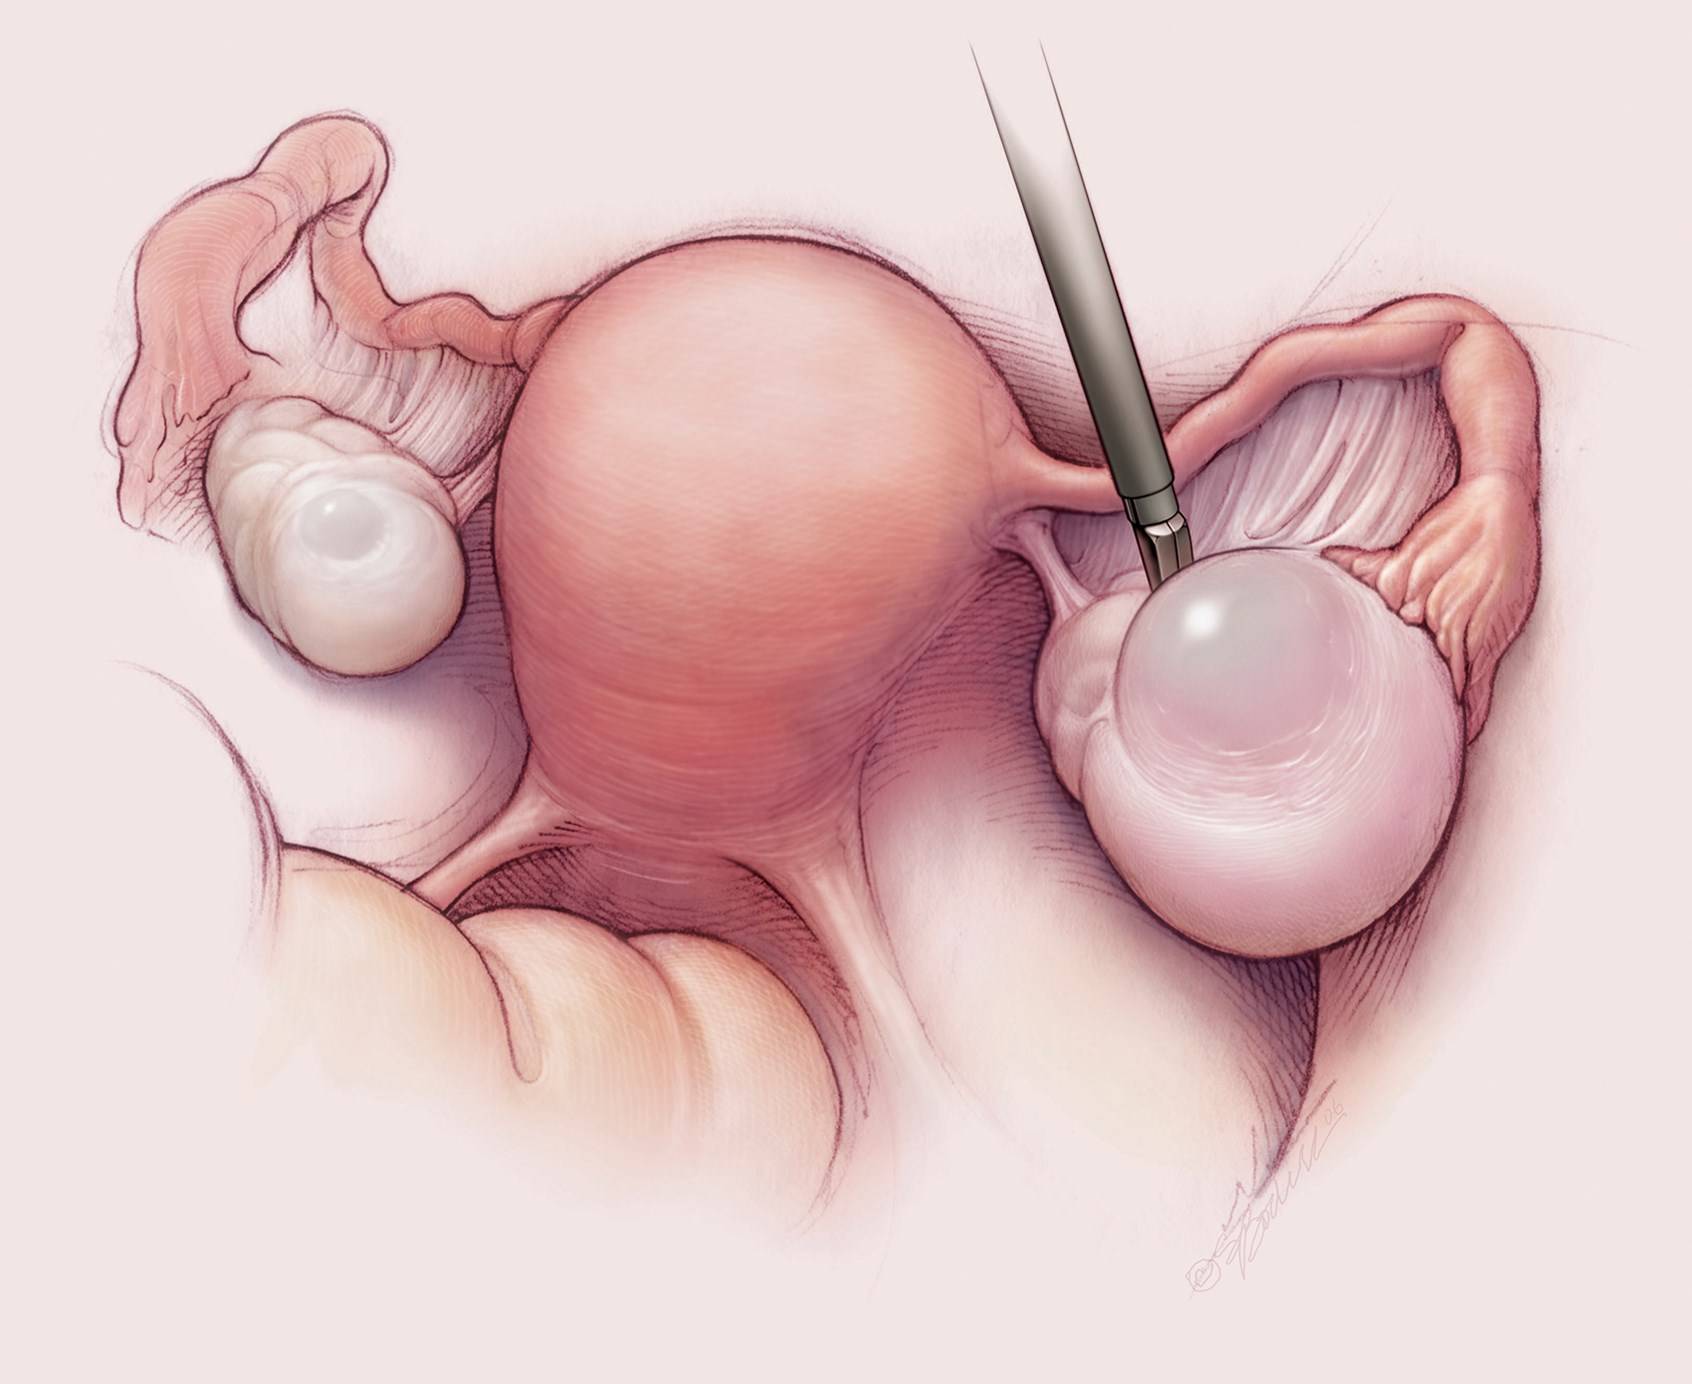 оргазм при удалении матки и яичников фото 33